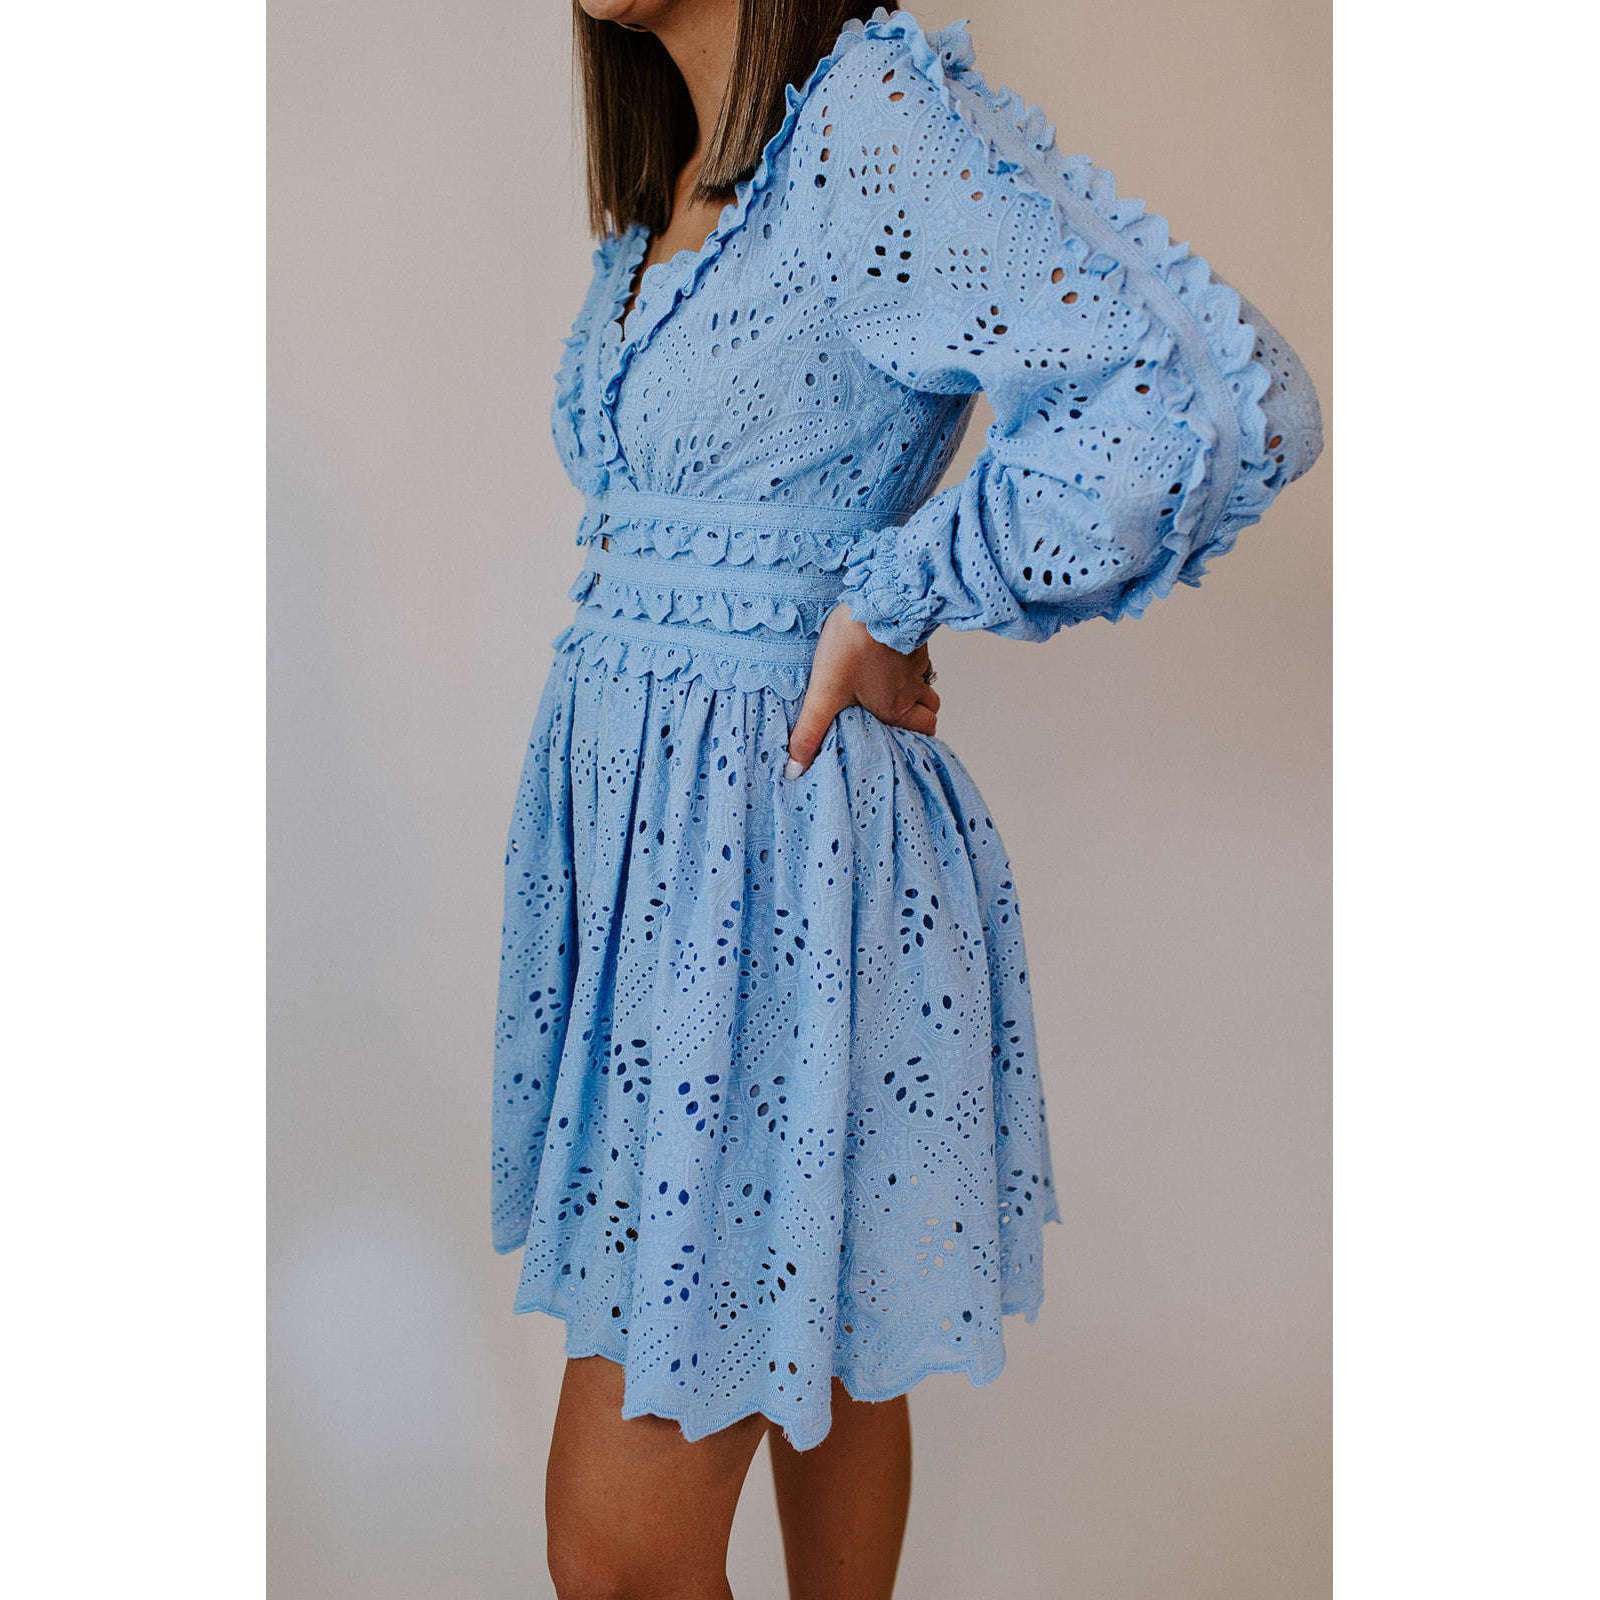 8.28 Boutique:ALLISON New York,Allison Taylor Lace Mini Dress,Dress